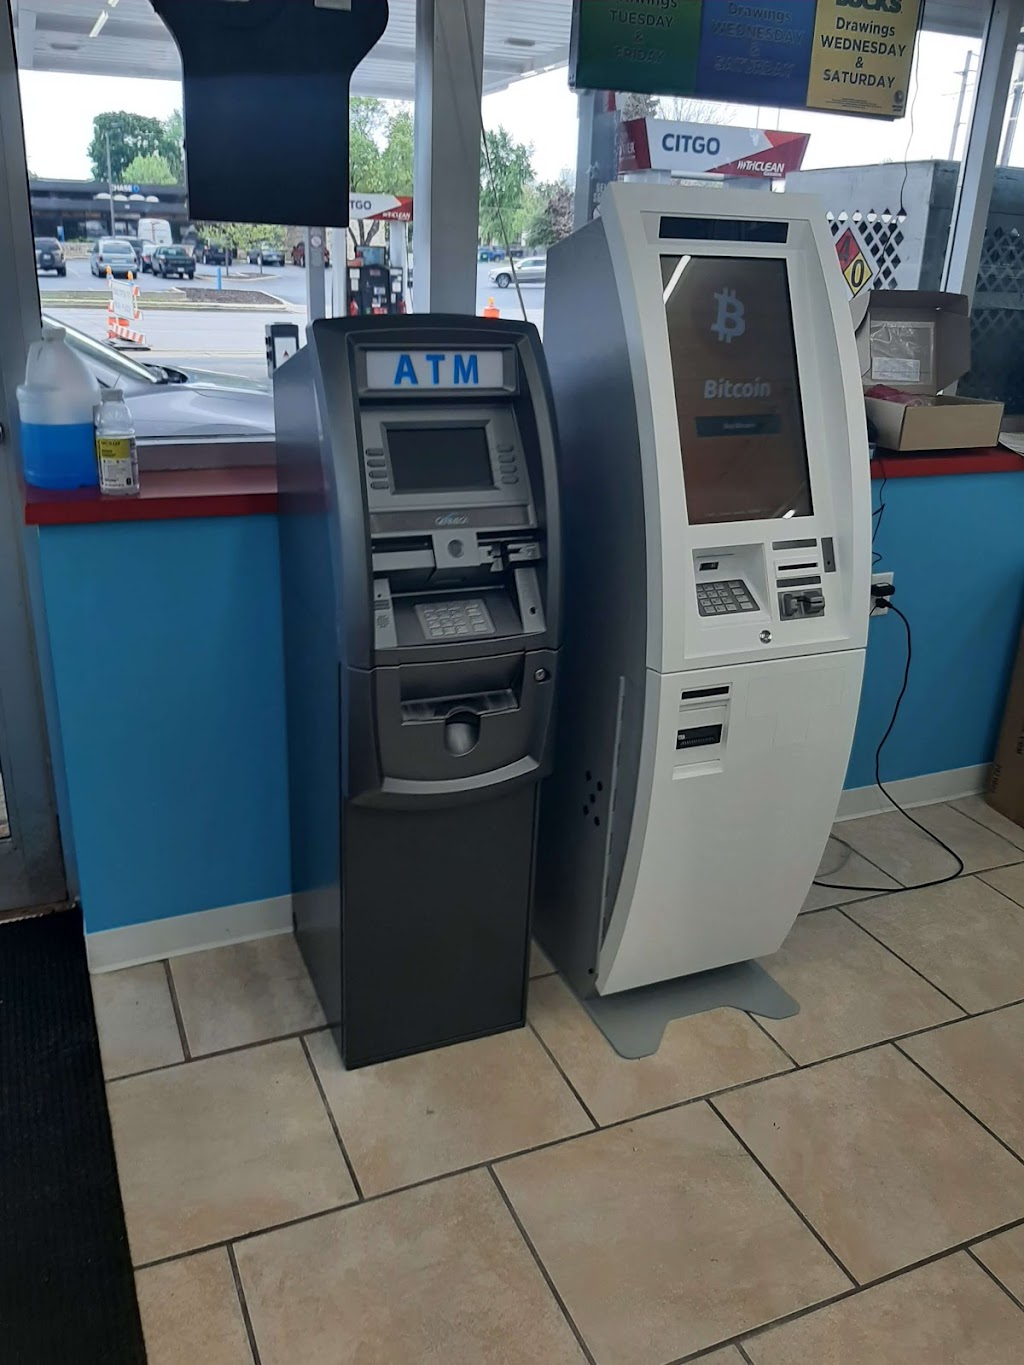 Cash2Bitcoin Bitcoin ATM | 3806 30th Ave, Kenosha, WI 53144, USA | Phone: (888) 897-9792